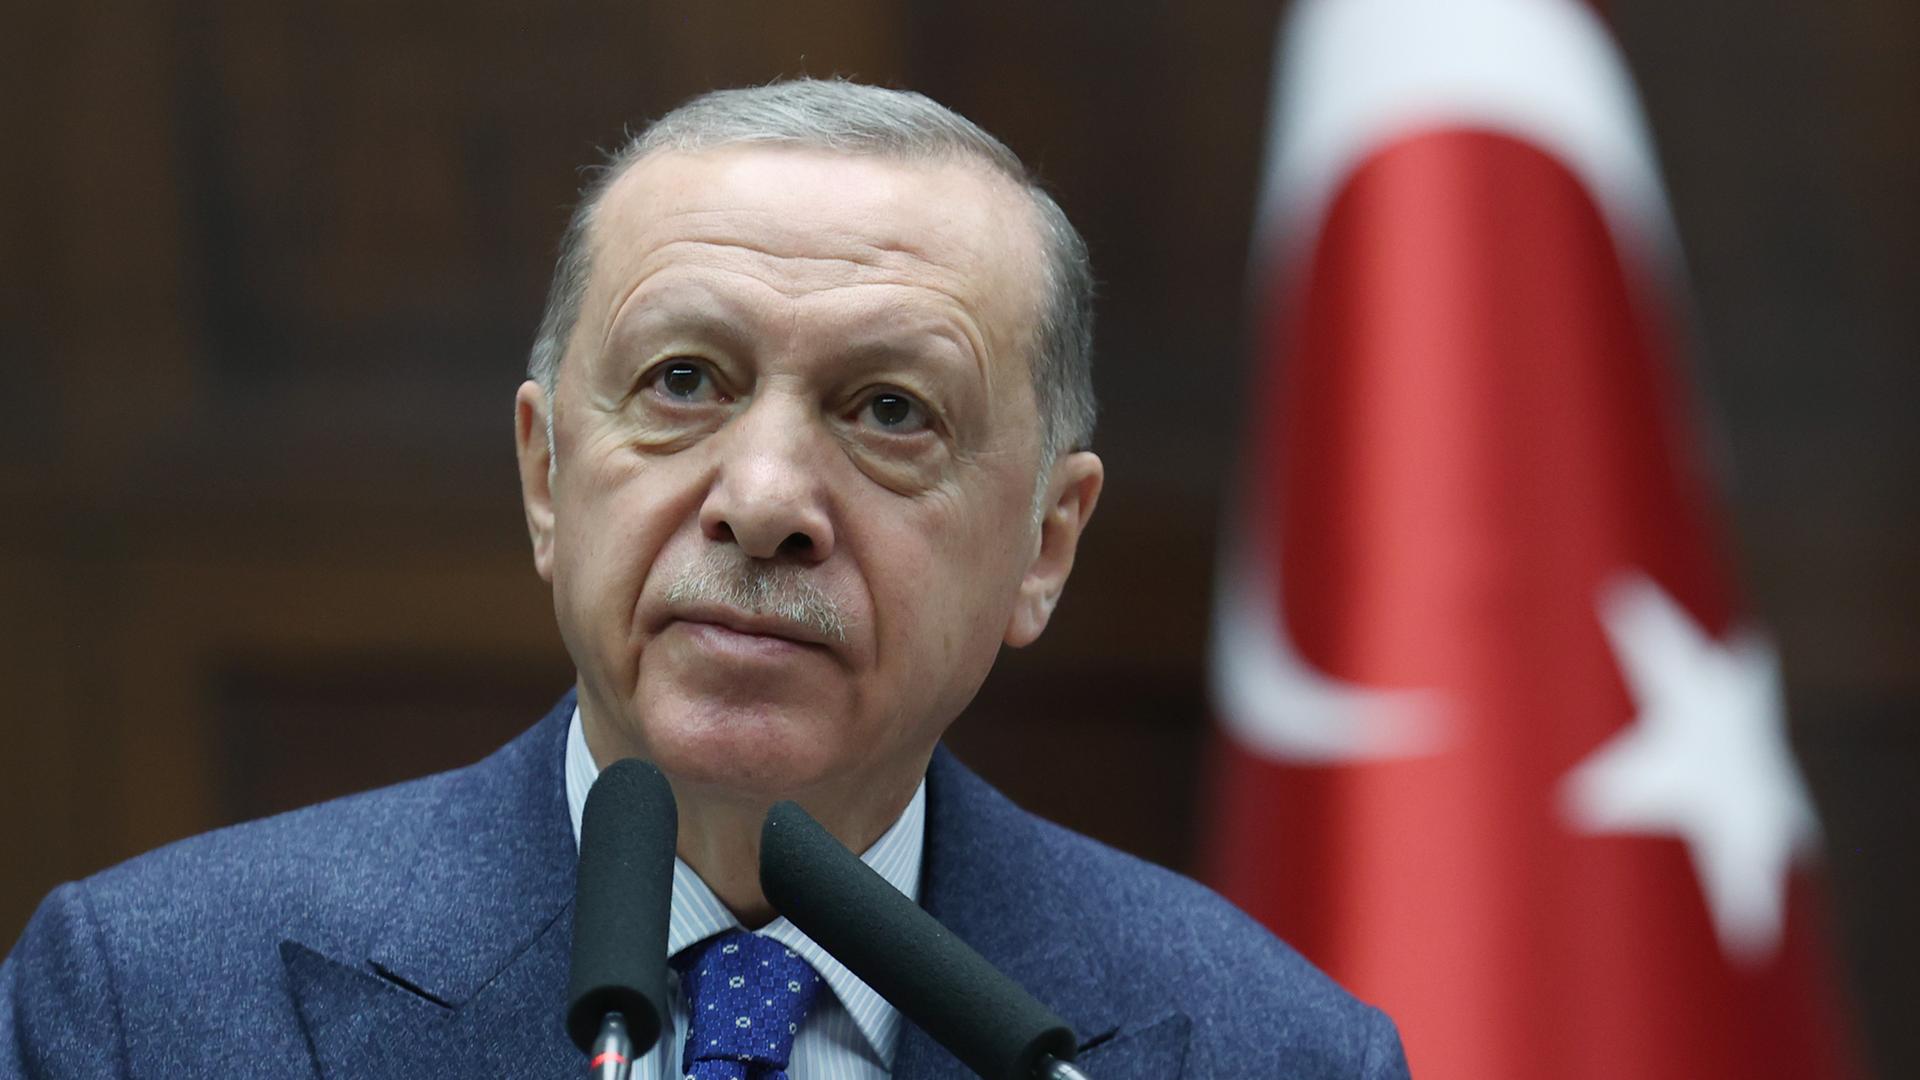 Das Bild zeigt den türkischen Präsidenten Recep Tayyip Erdogan vor einem Mikrofon.